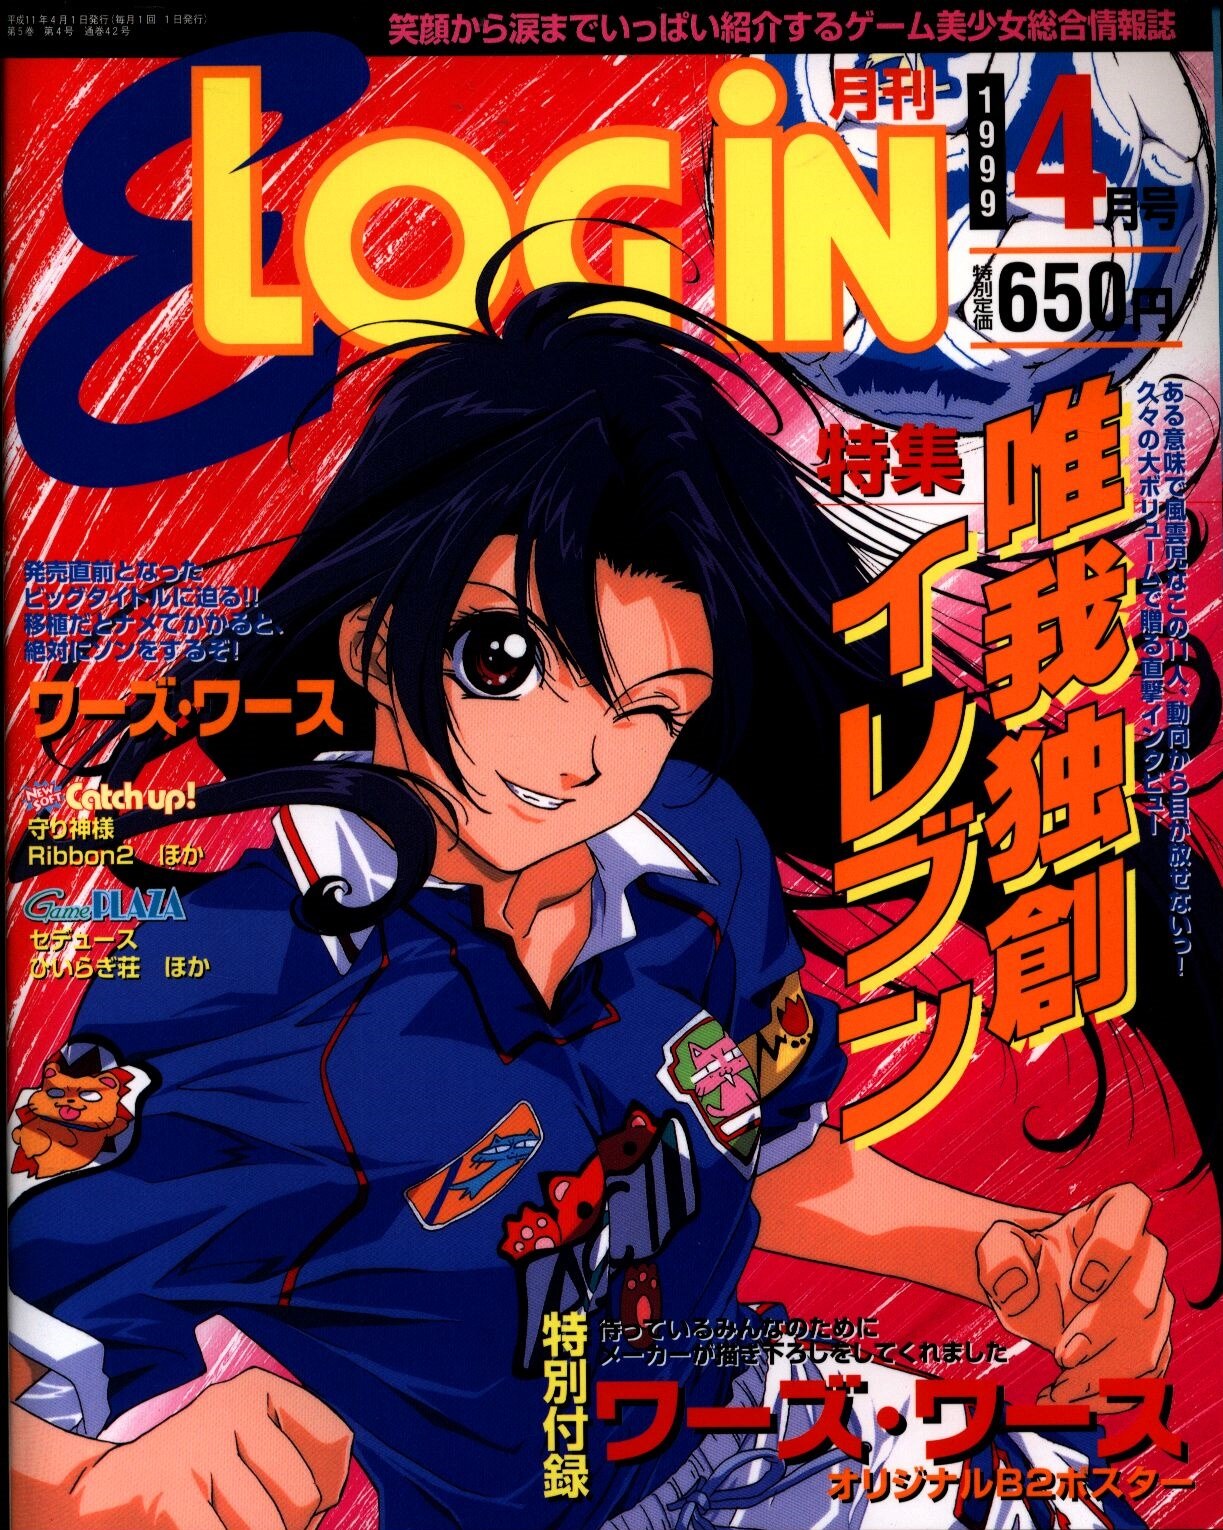 E-LOGIN　アスペクト　9904　まんだらけ　1999年(平成11年)のゲーム雑誌　1999年04月号　Mandarake